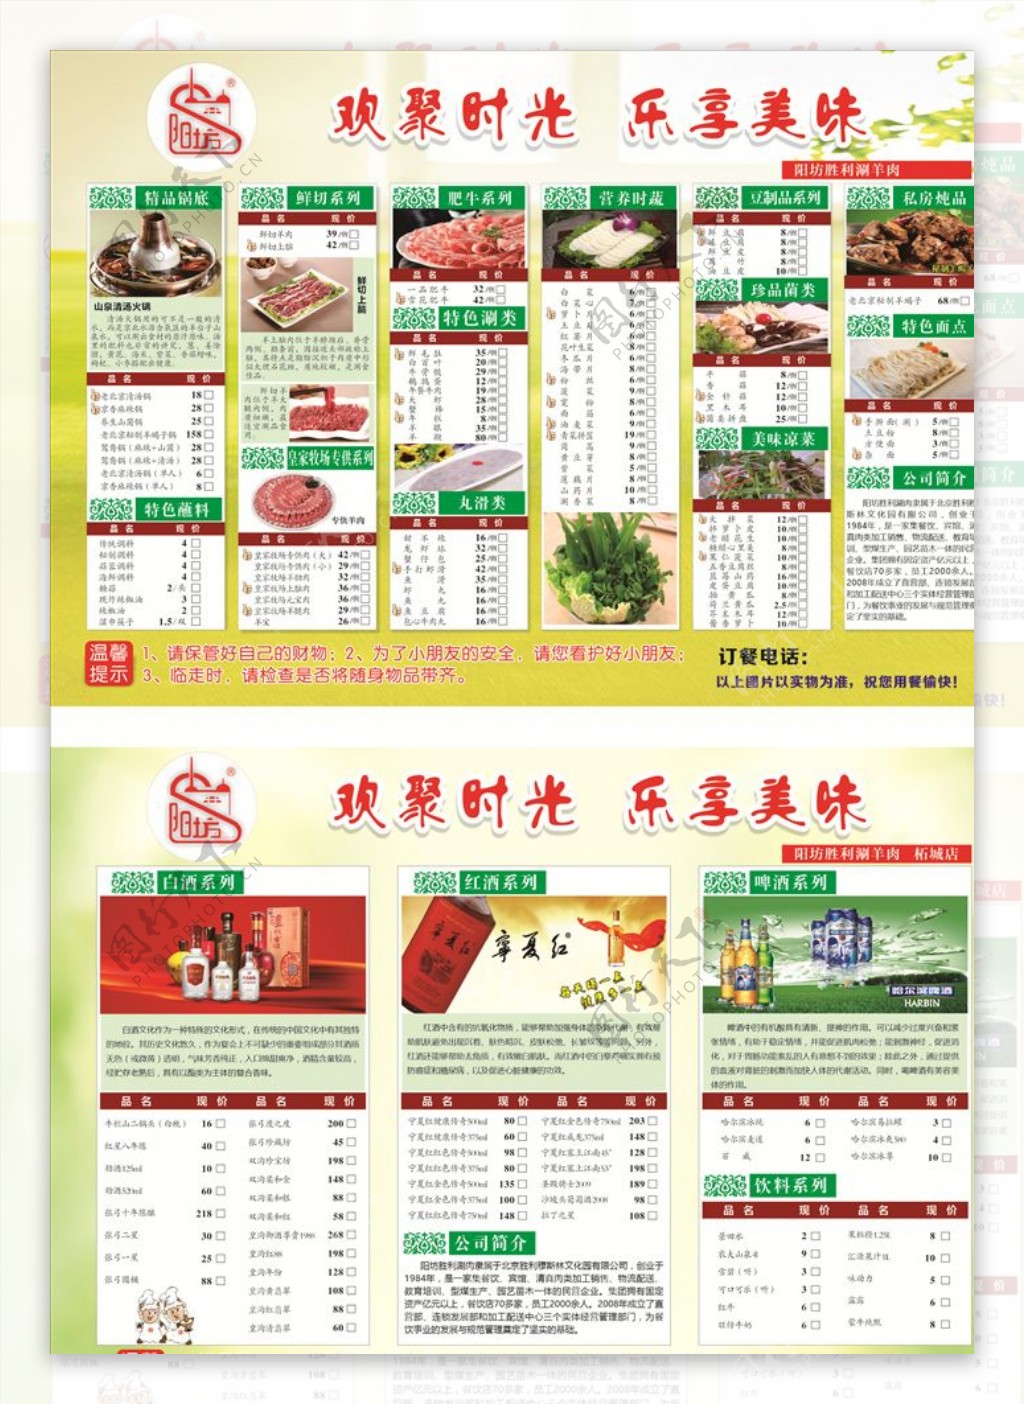 北京阳坊胜利涮羊肉菜单